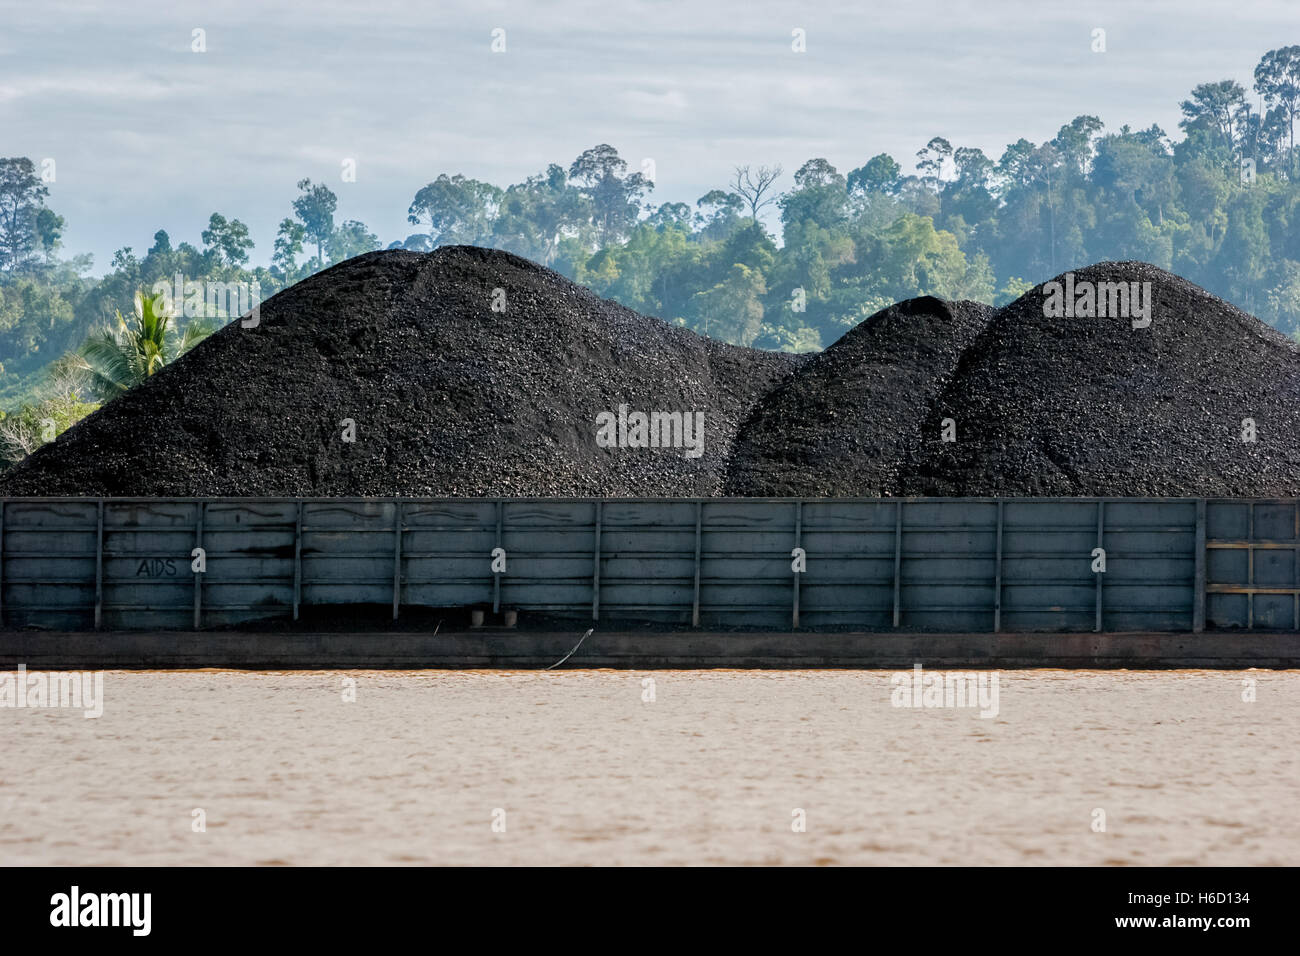 Coal barge on Segah River in Tanjung Redeb, Berau, East Kalimantan, Indonesia. Stock Photo